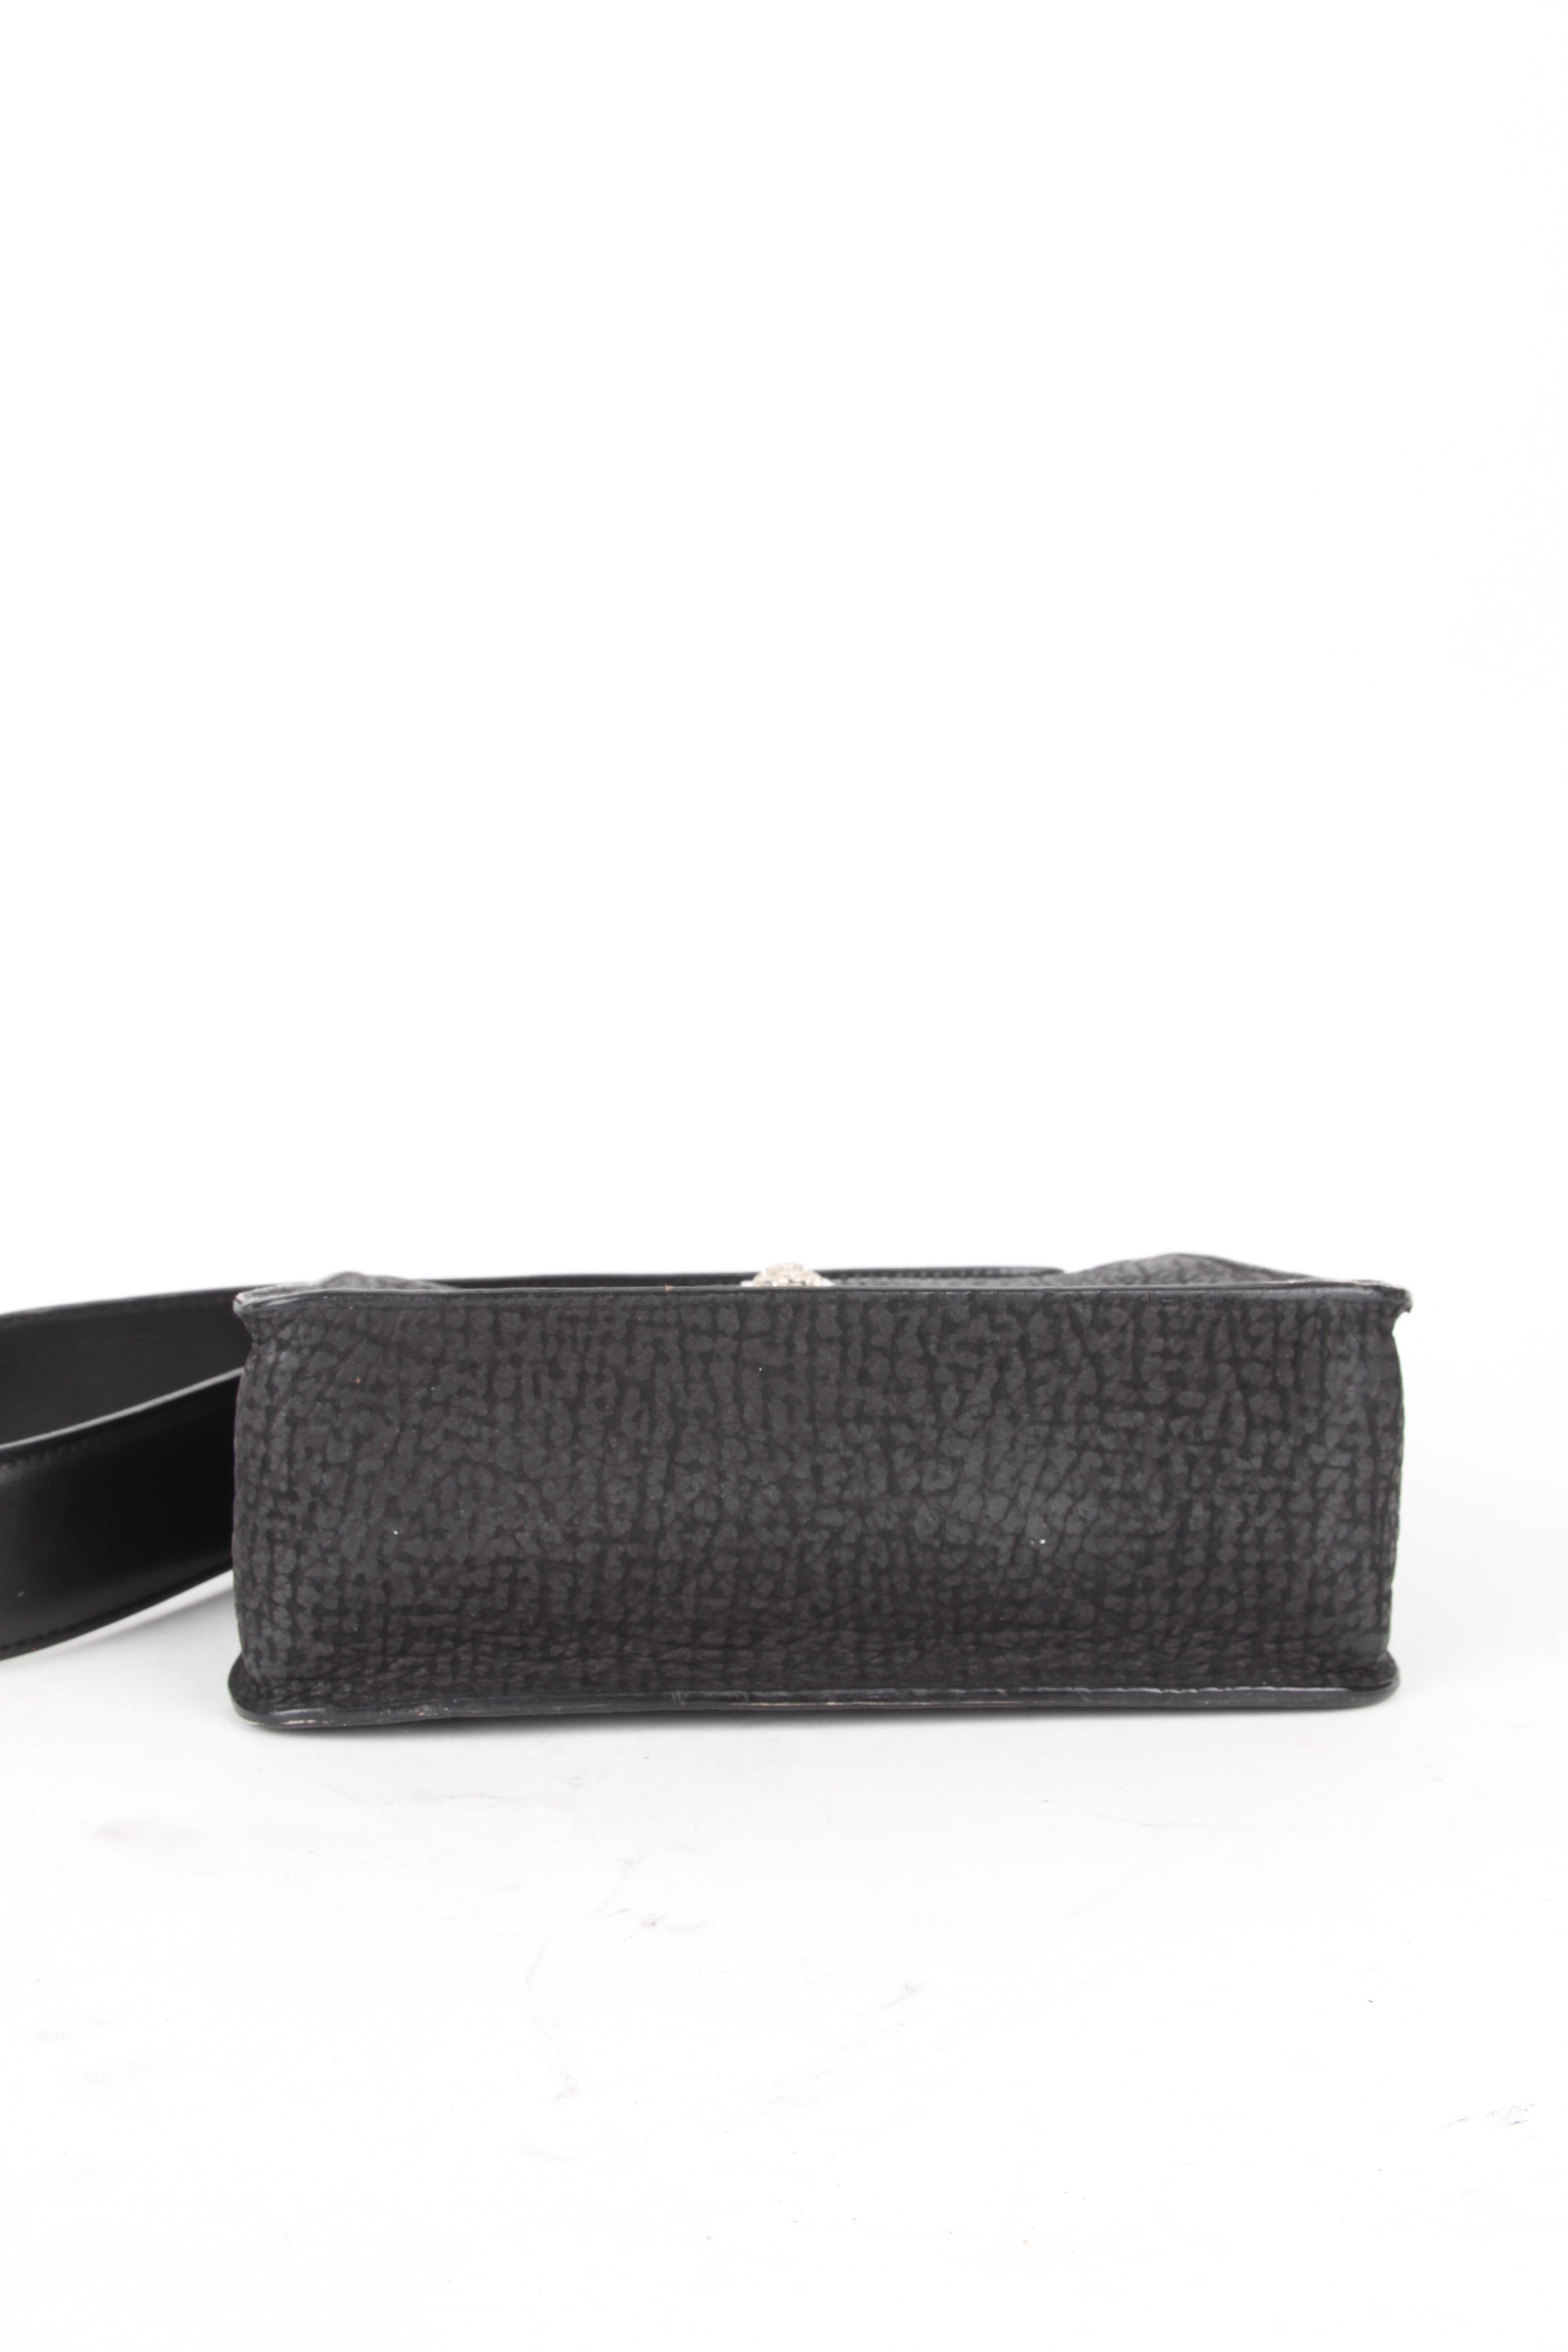 Gianni Versace Black Silver Leather Shoulder Bag For Sale 1